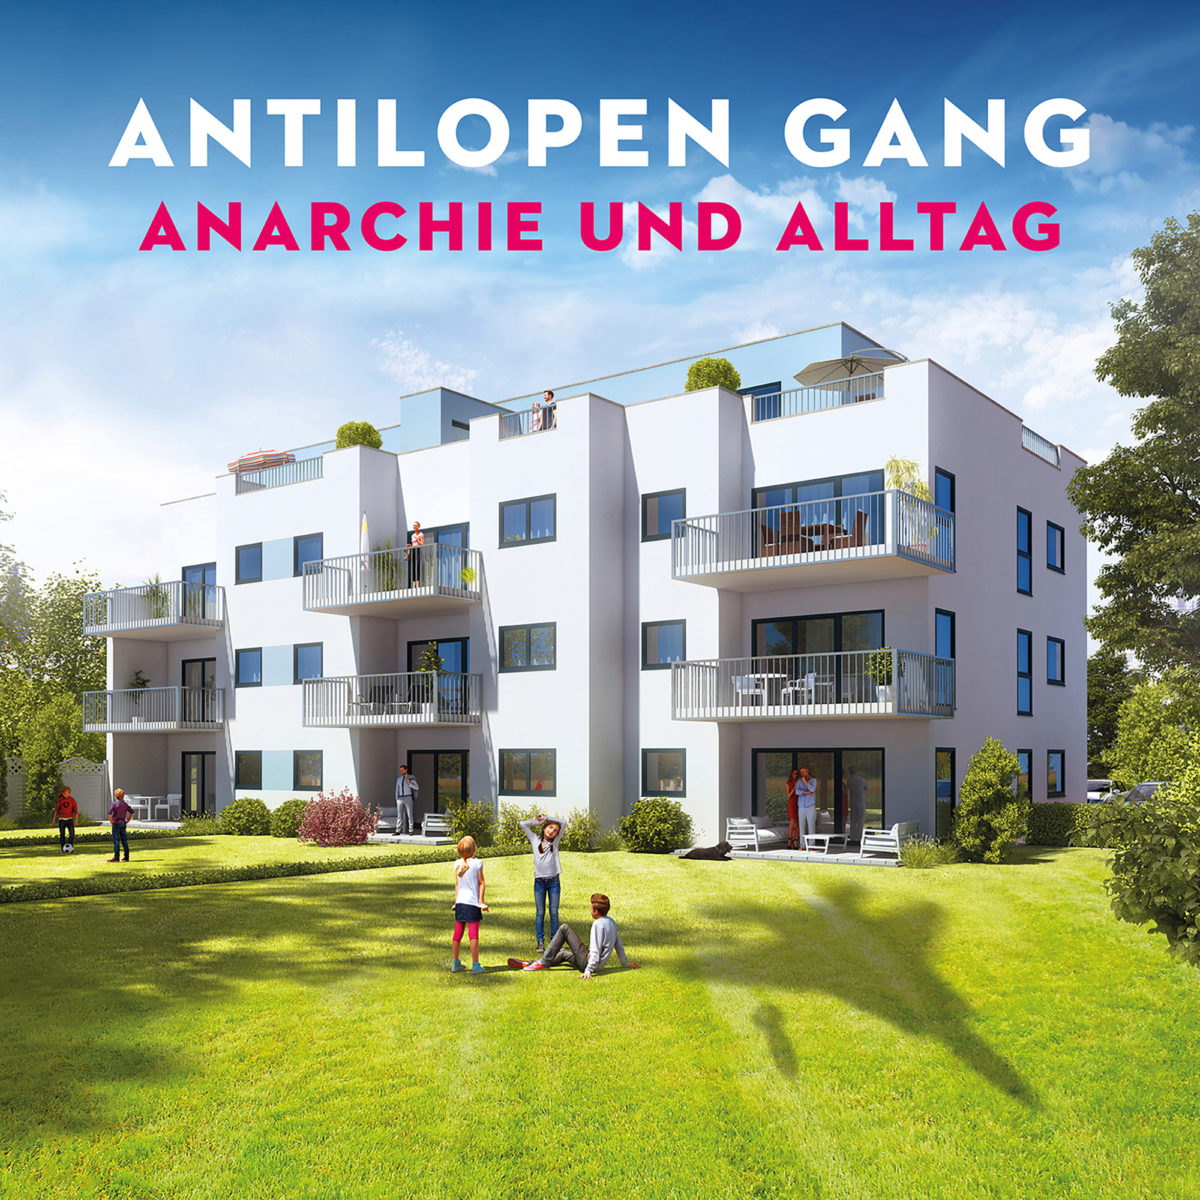 Antilopen Gang: Anarchie und Alltag + Atombombe auf Deutschland (2017)